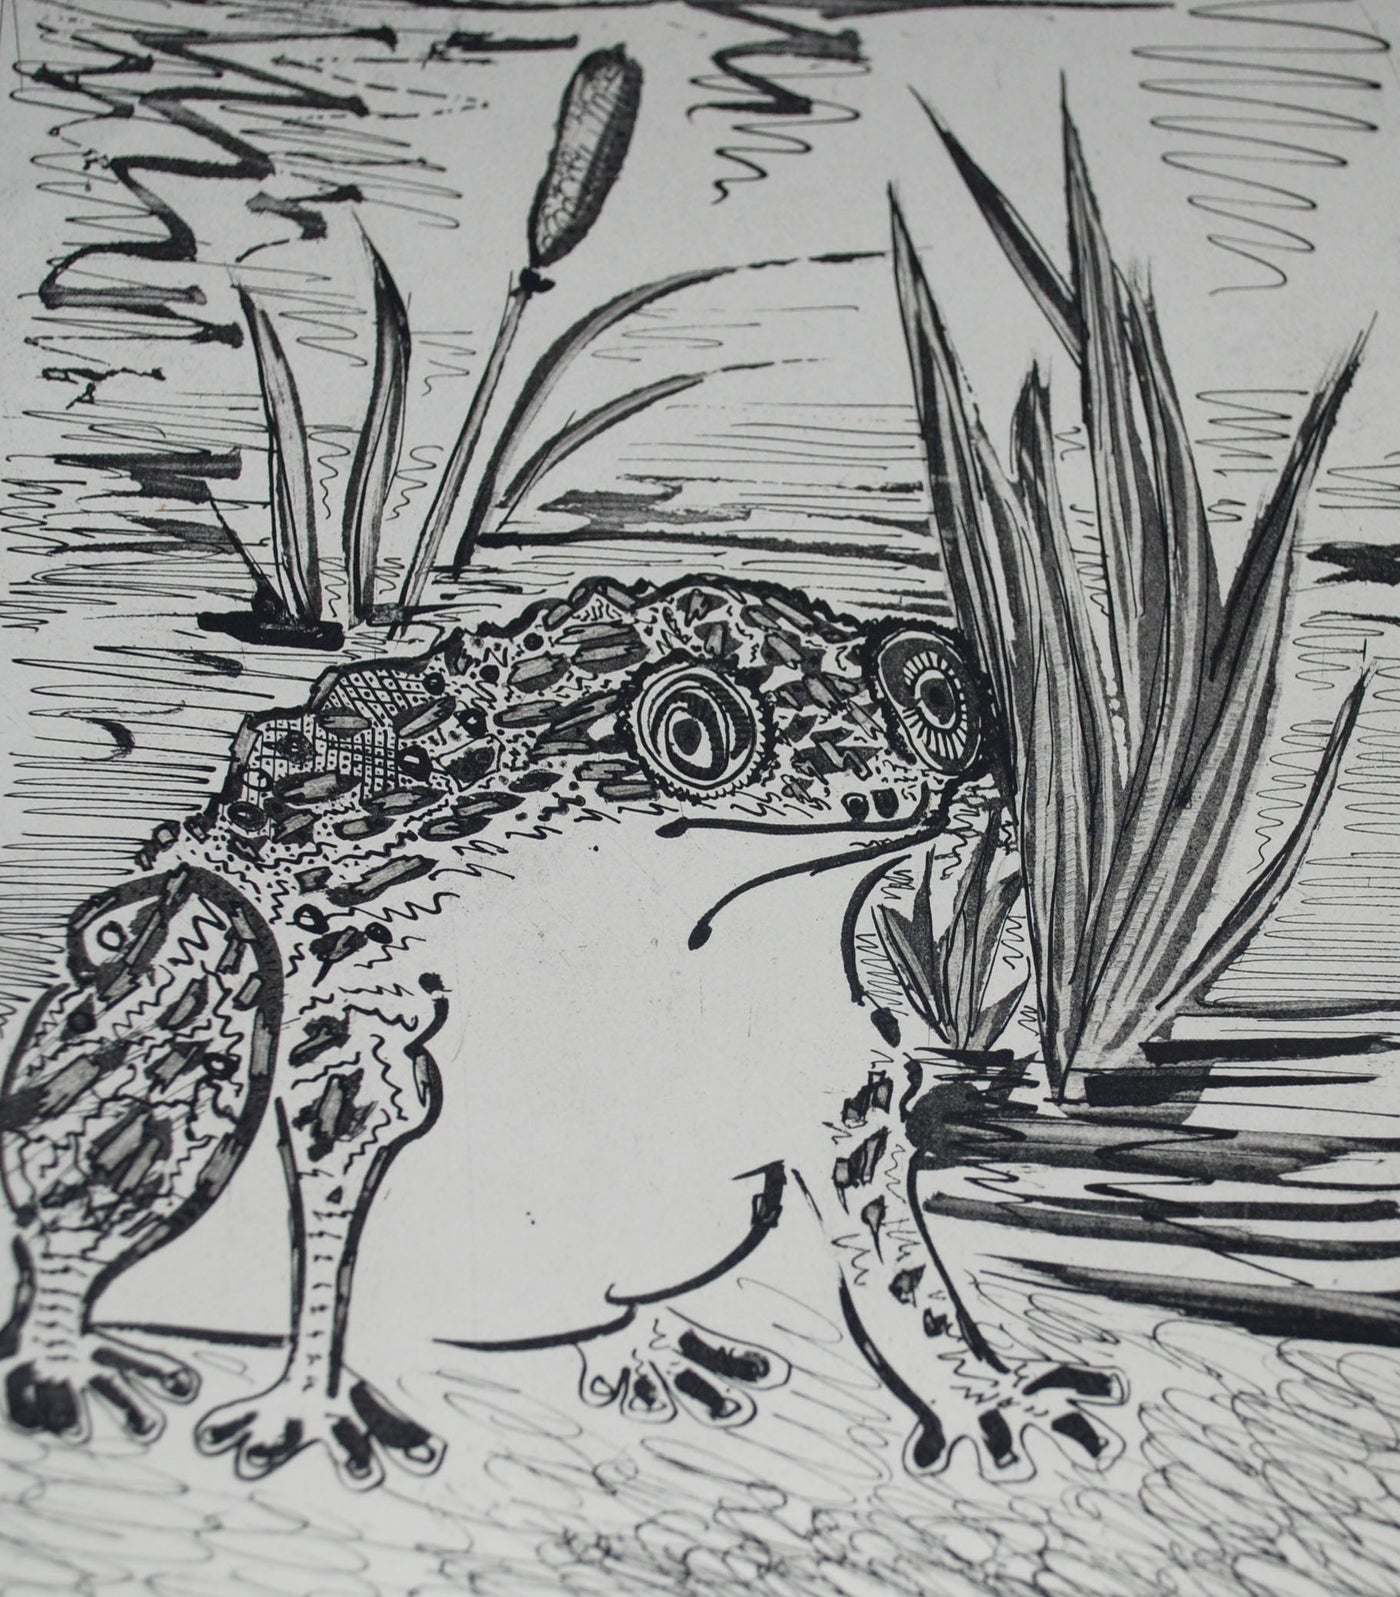 Pablo Picasso La Crapaud (The Toad) (Bloch 330, Cramer No. 37) 1942